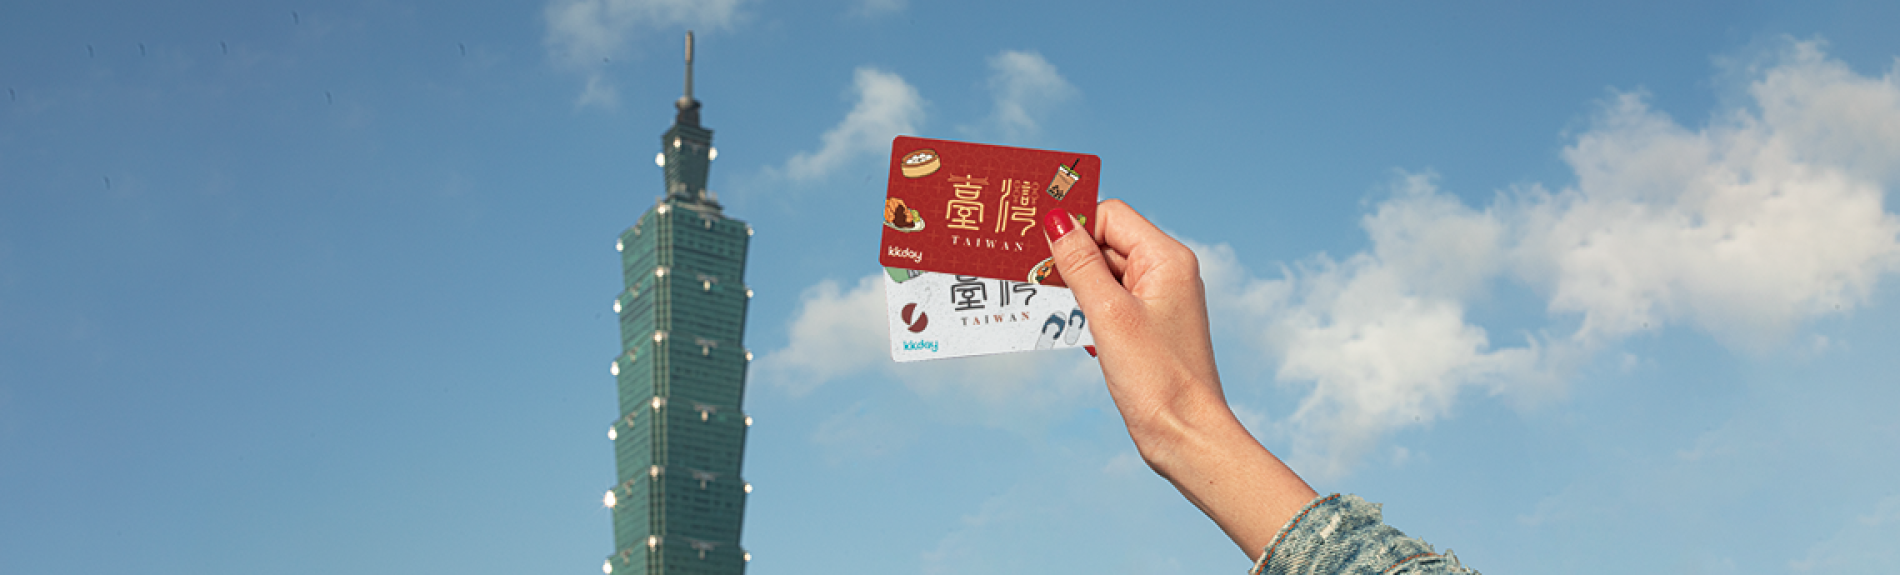 iPASS（一卡通）予約 台湾全土の公共交通機関で利用可能（プリペイド交通カード）